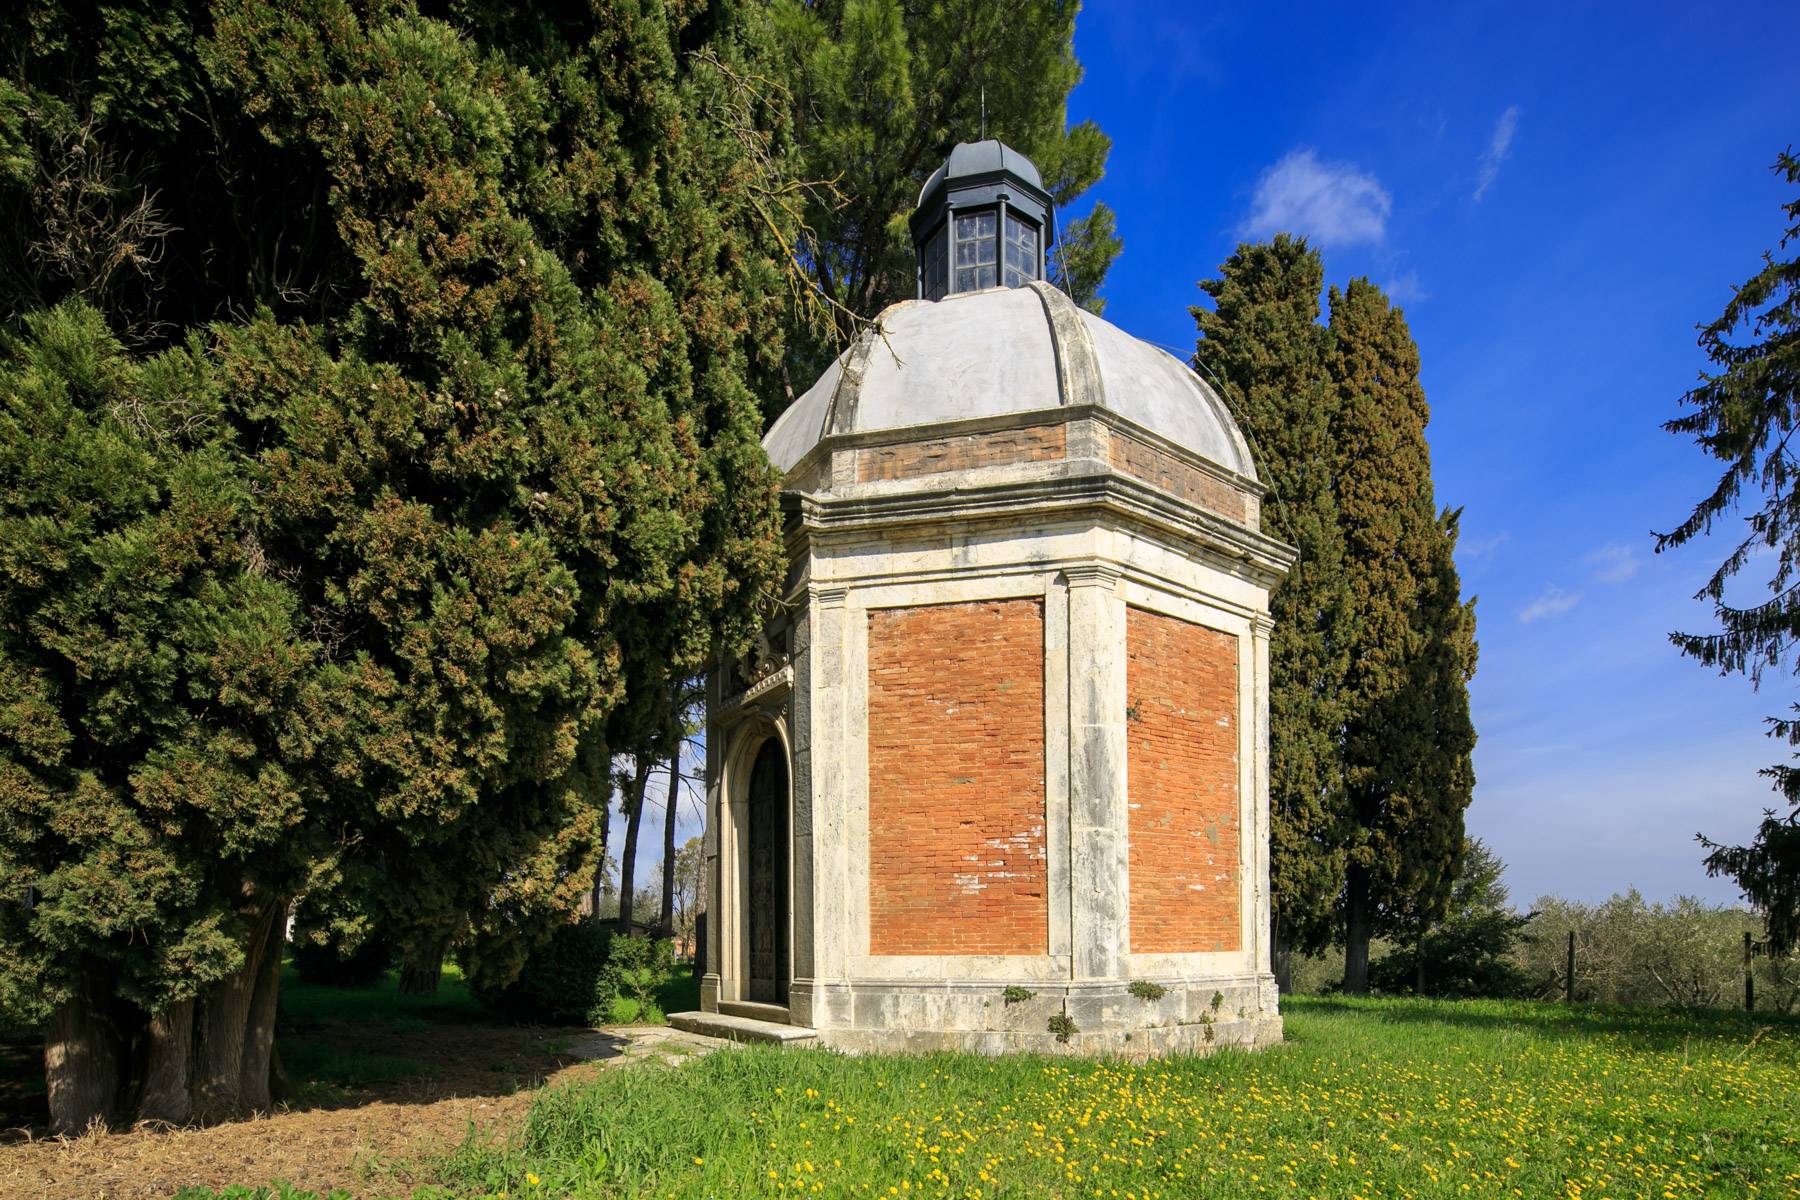 Villa in Vendita a Montepulciano: 5 locali, 2400 mq - Foto 20